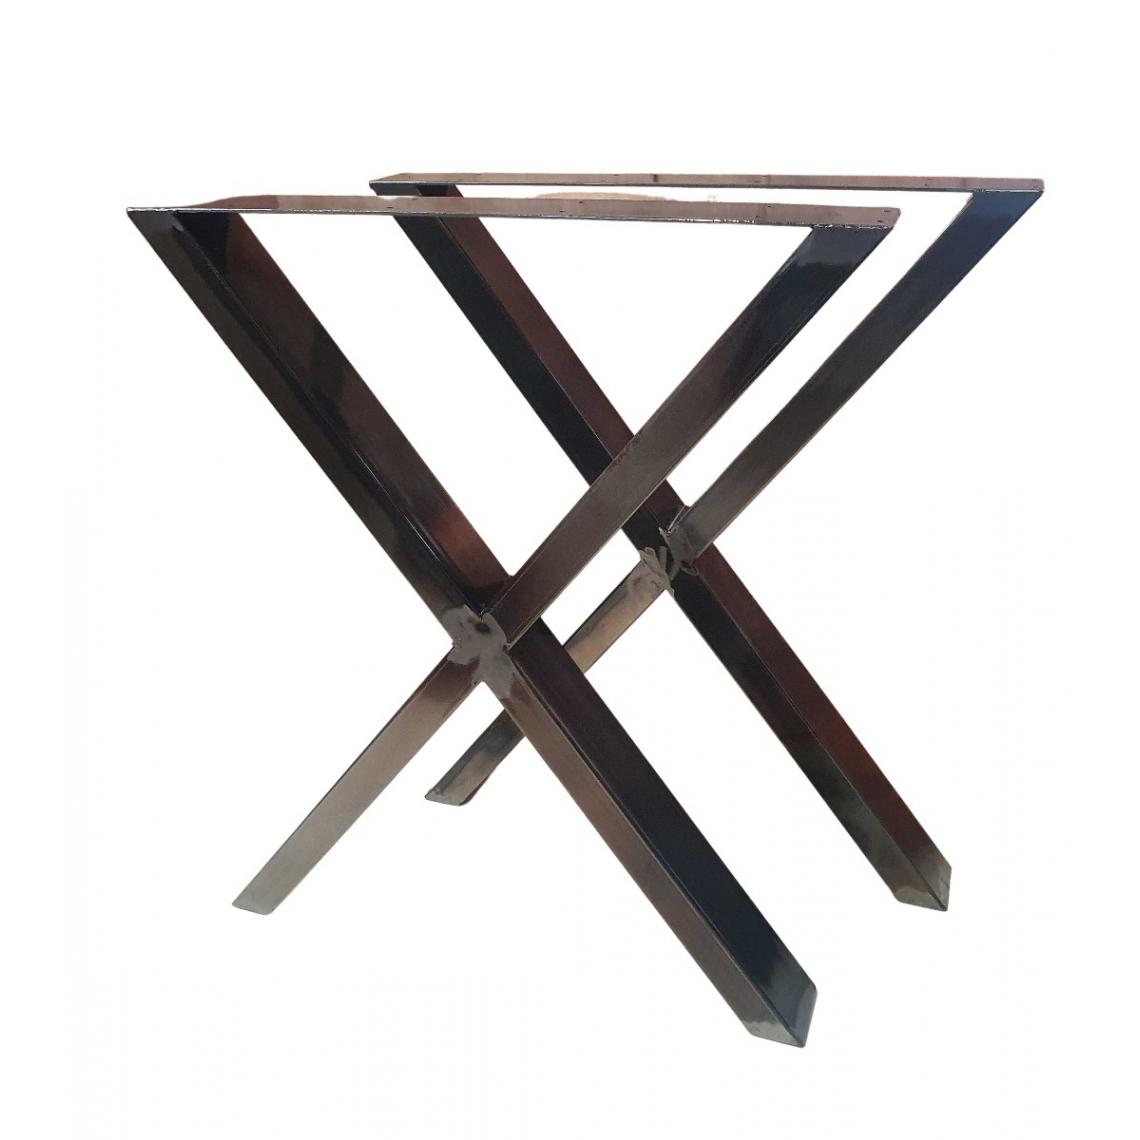 Bcelec - HMLT-3-RUS Jeu de 2 Pieds de table en acier brut vernis format X, Pieds de table métal 60x72cm, Design Industriel - Pieds & roulettes pour meuble